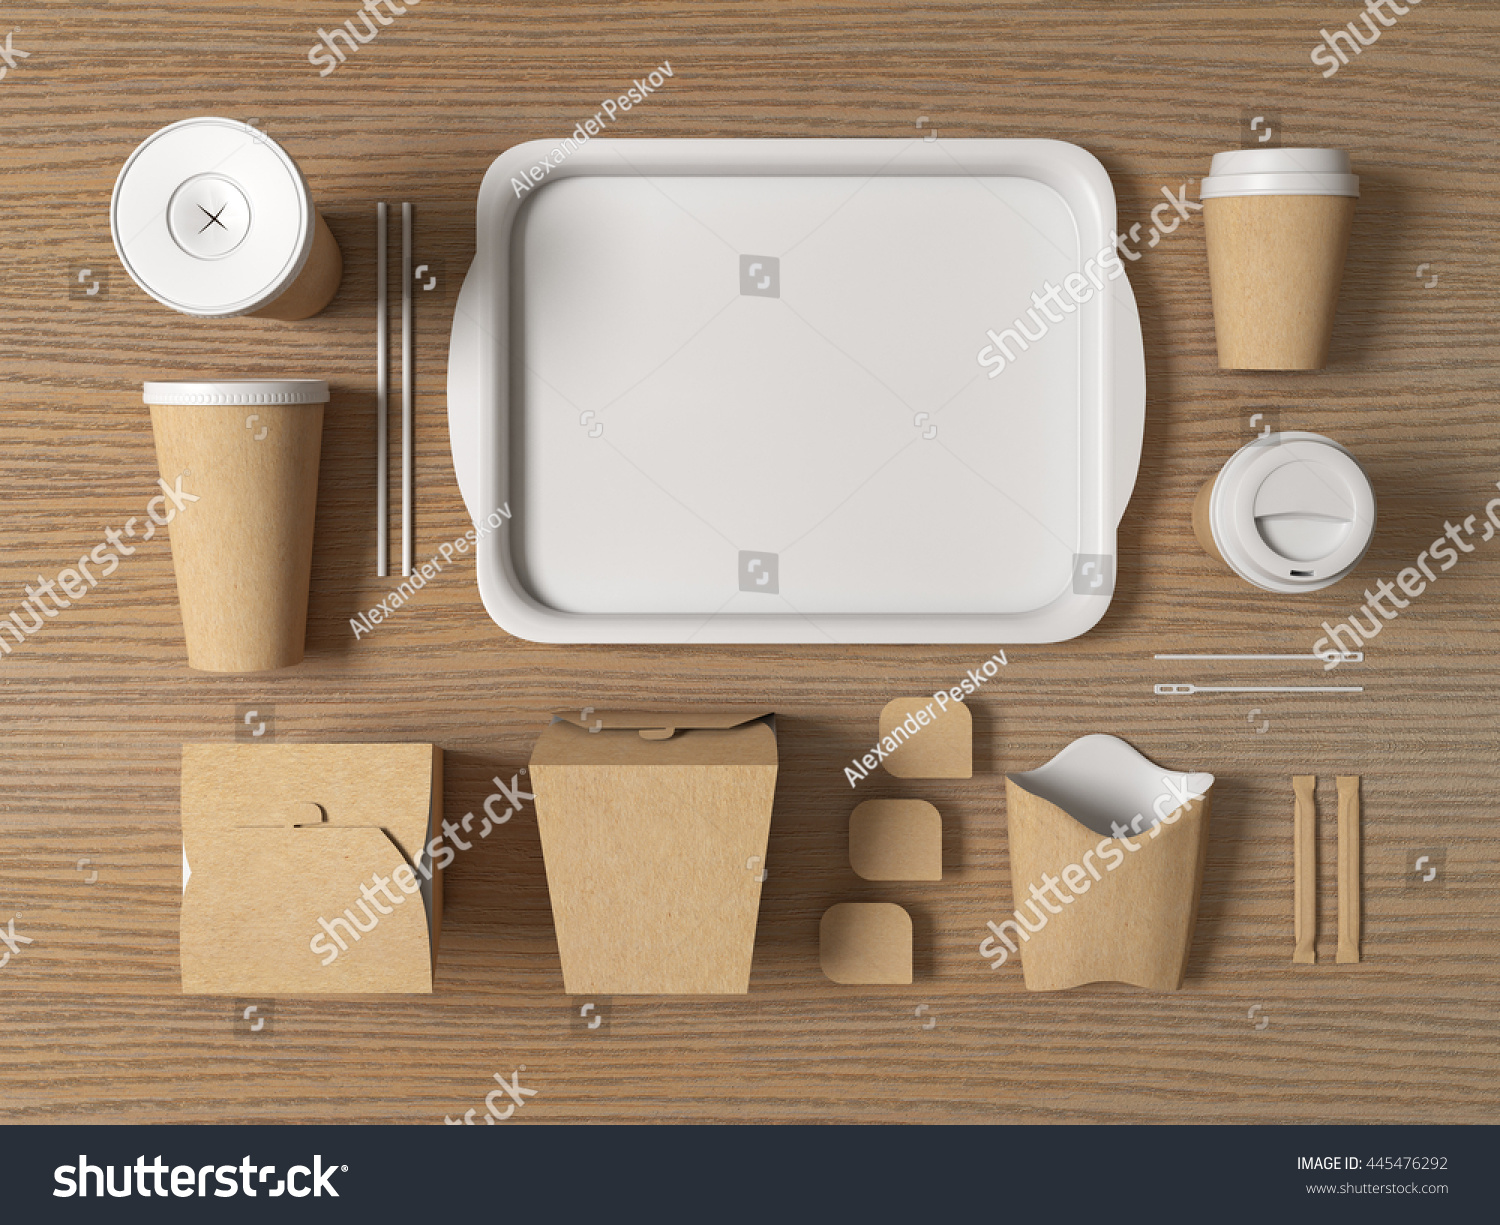 Download Burger Bar Set Craft Paper Blank Stock Illustration 445476292 - Shutterstock